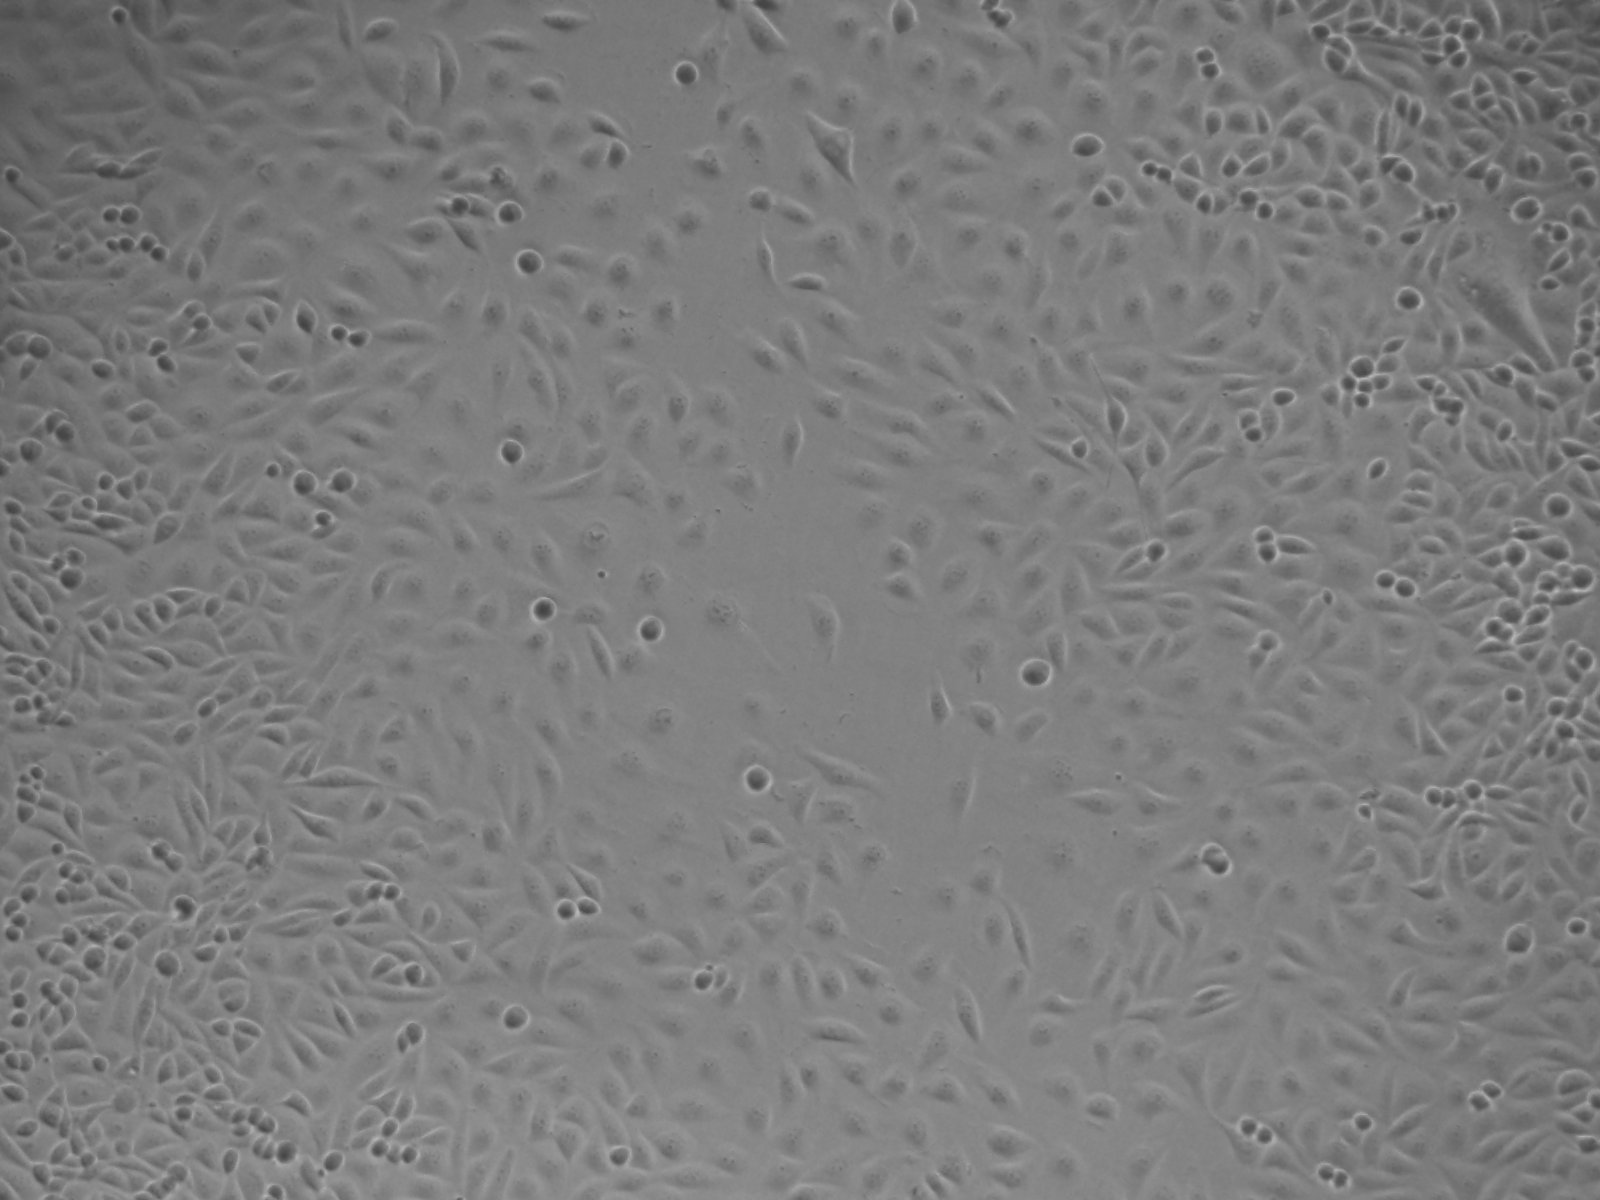 人脊髓星形胶质细胞